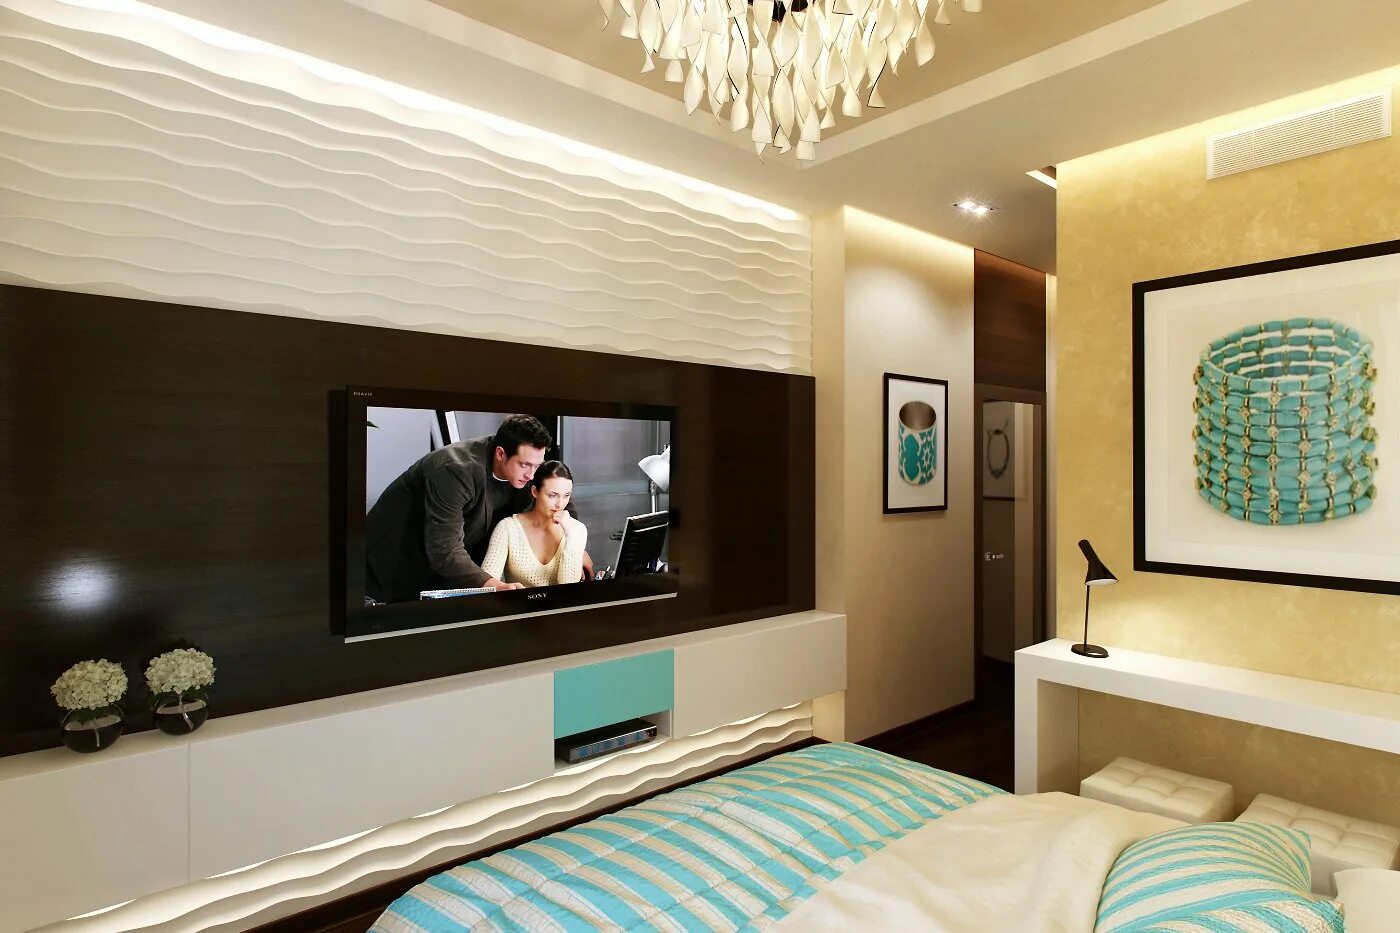 Телевизор перед кроватью. Телевизор на стене. Телевизор в спальне. Телевизор в спальне на стене. Телевизор в интерьере.